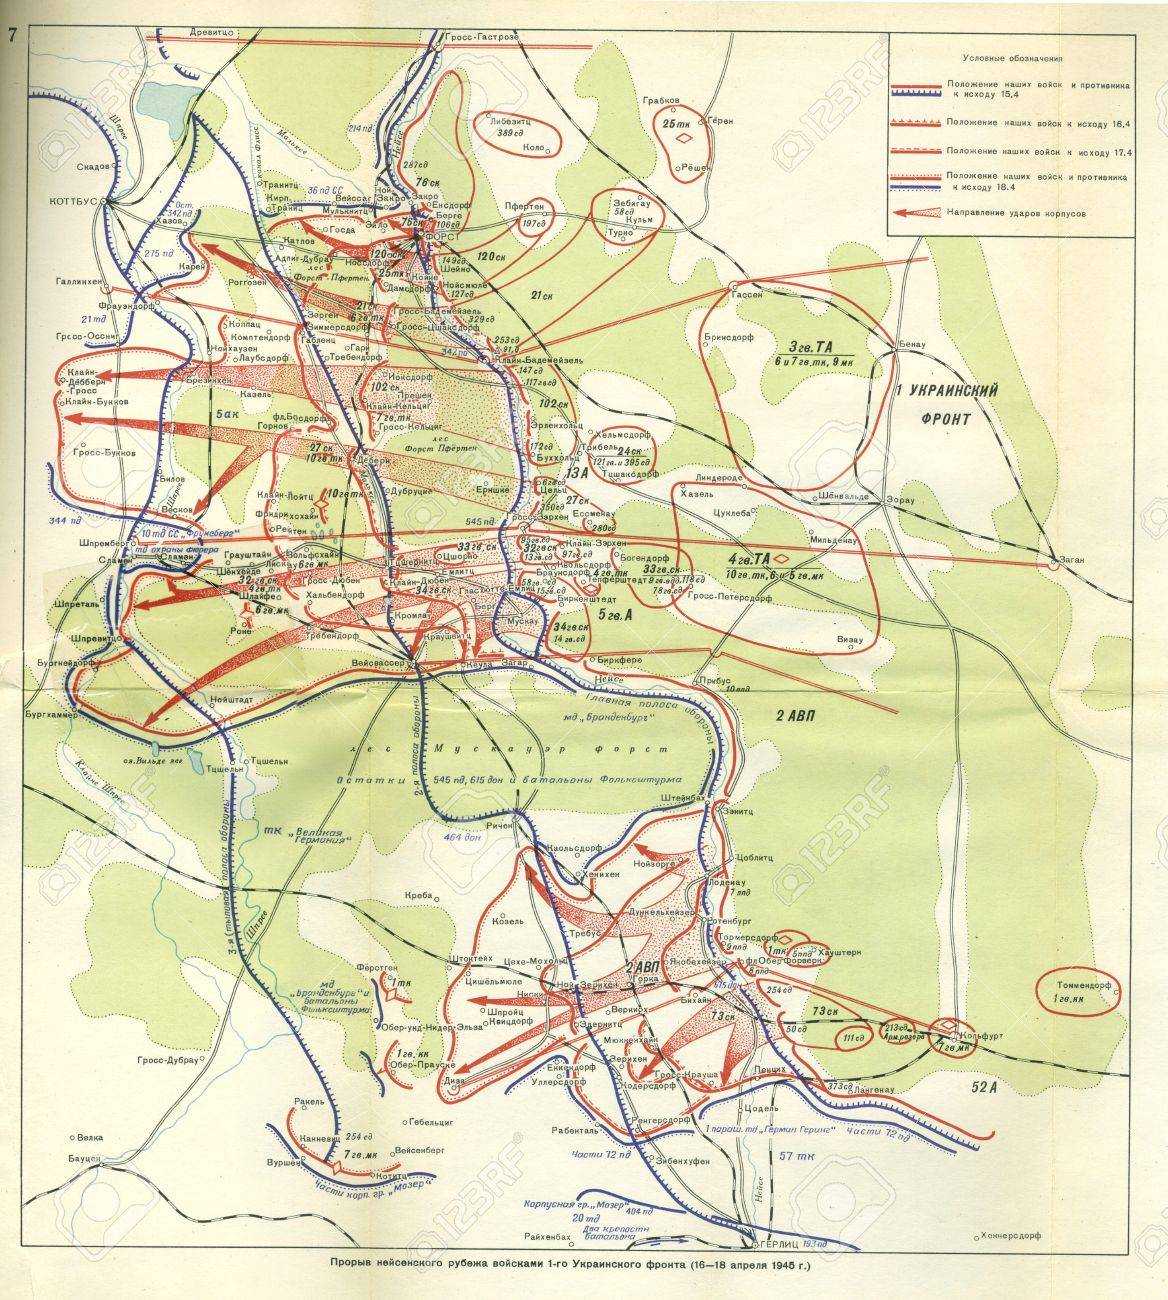 Battle map of the Battle of Berlin